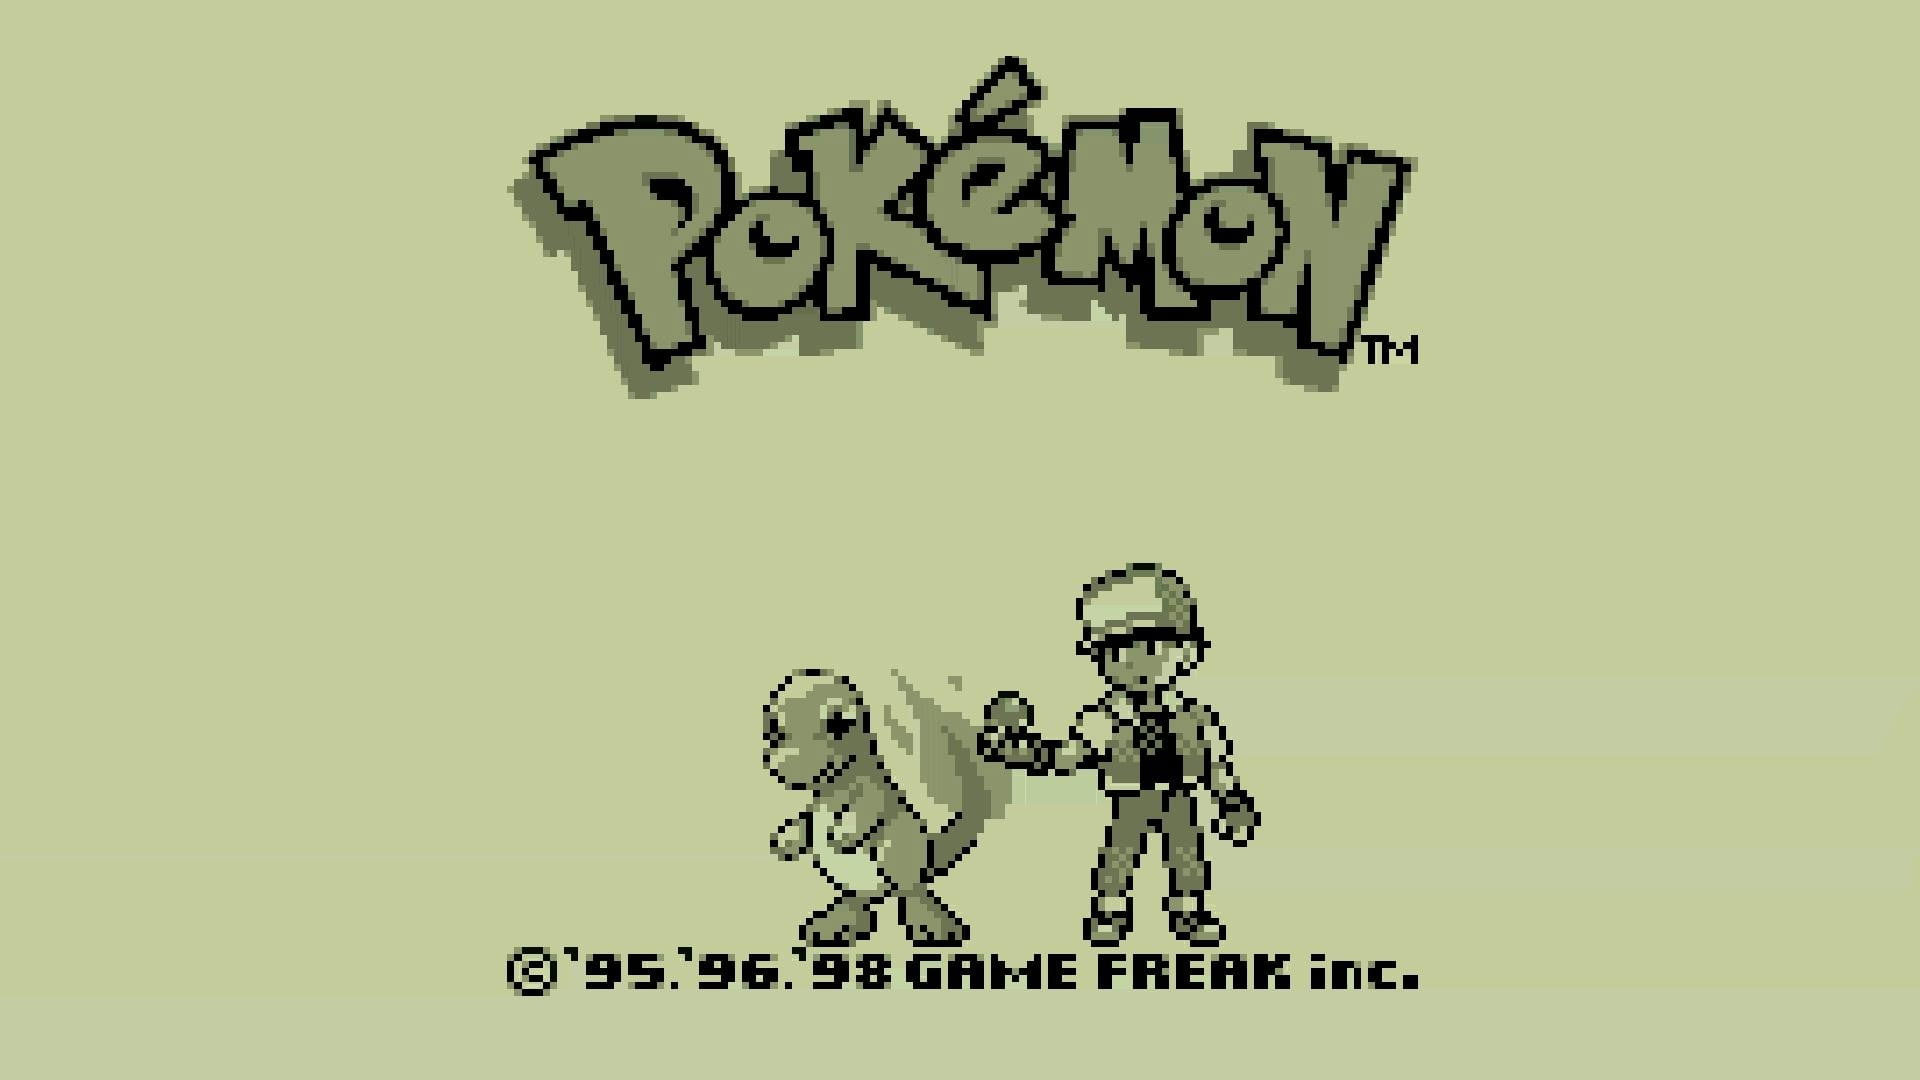 Wallpaper Pokemon 8 Bit Graphic, Pokémon, Charmander, Pixel